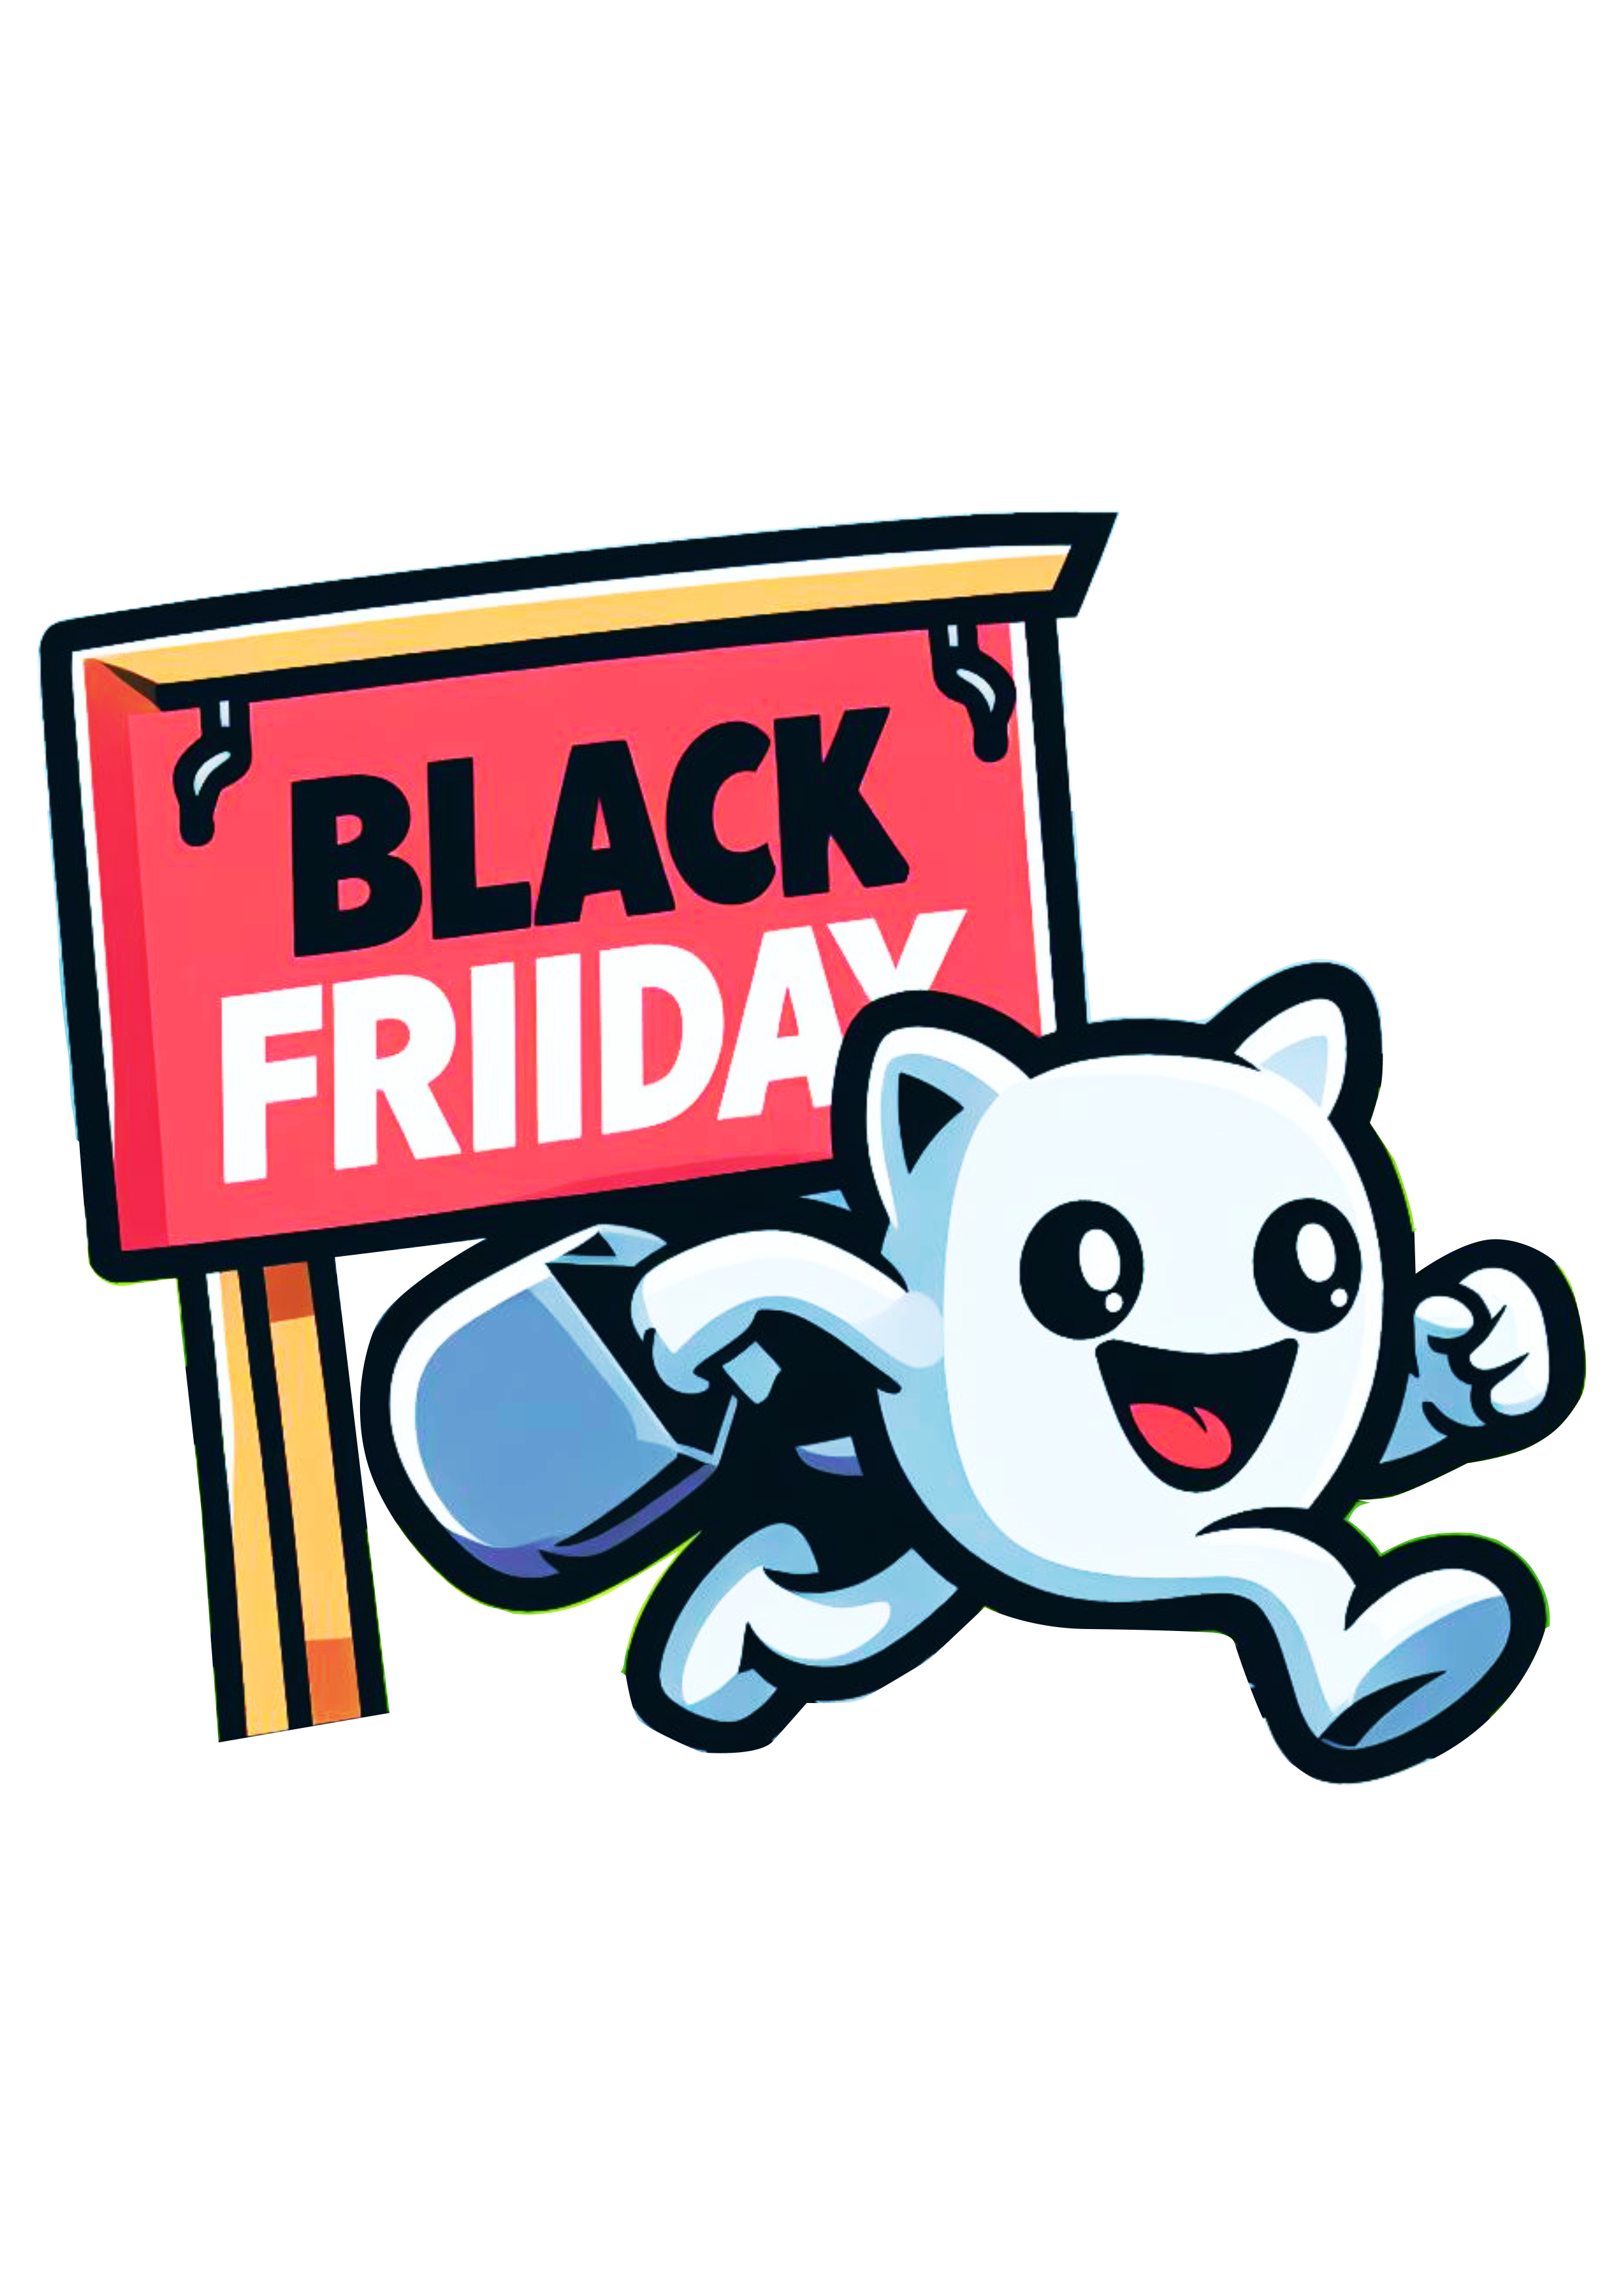 Black Friday logomarca bonequinho engraçado promoções png